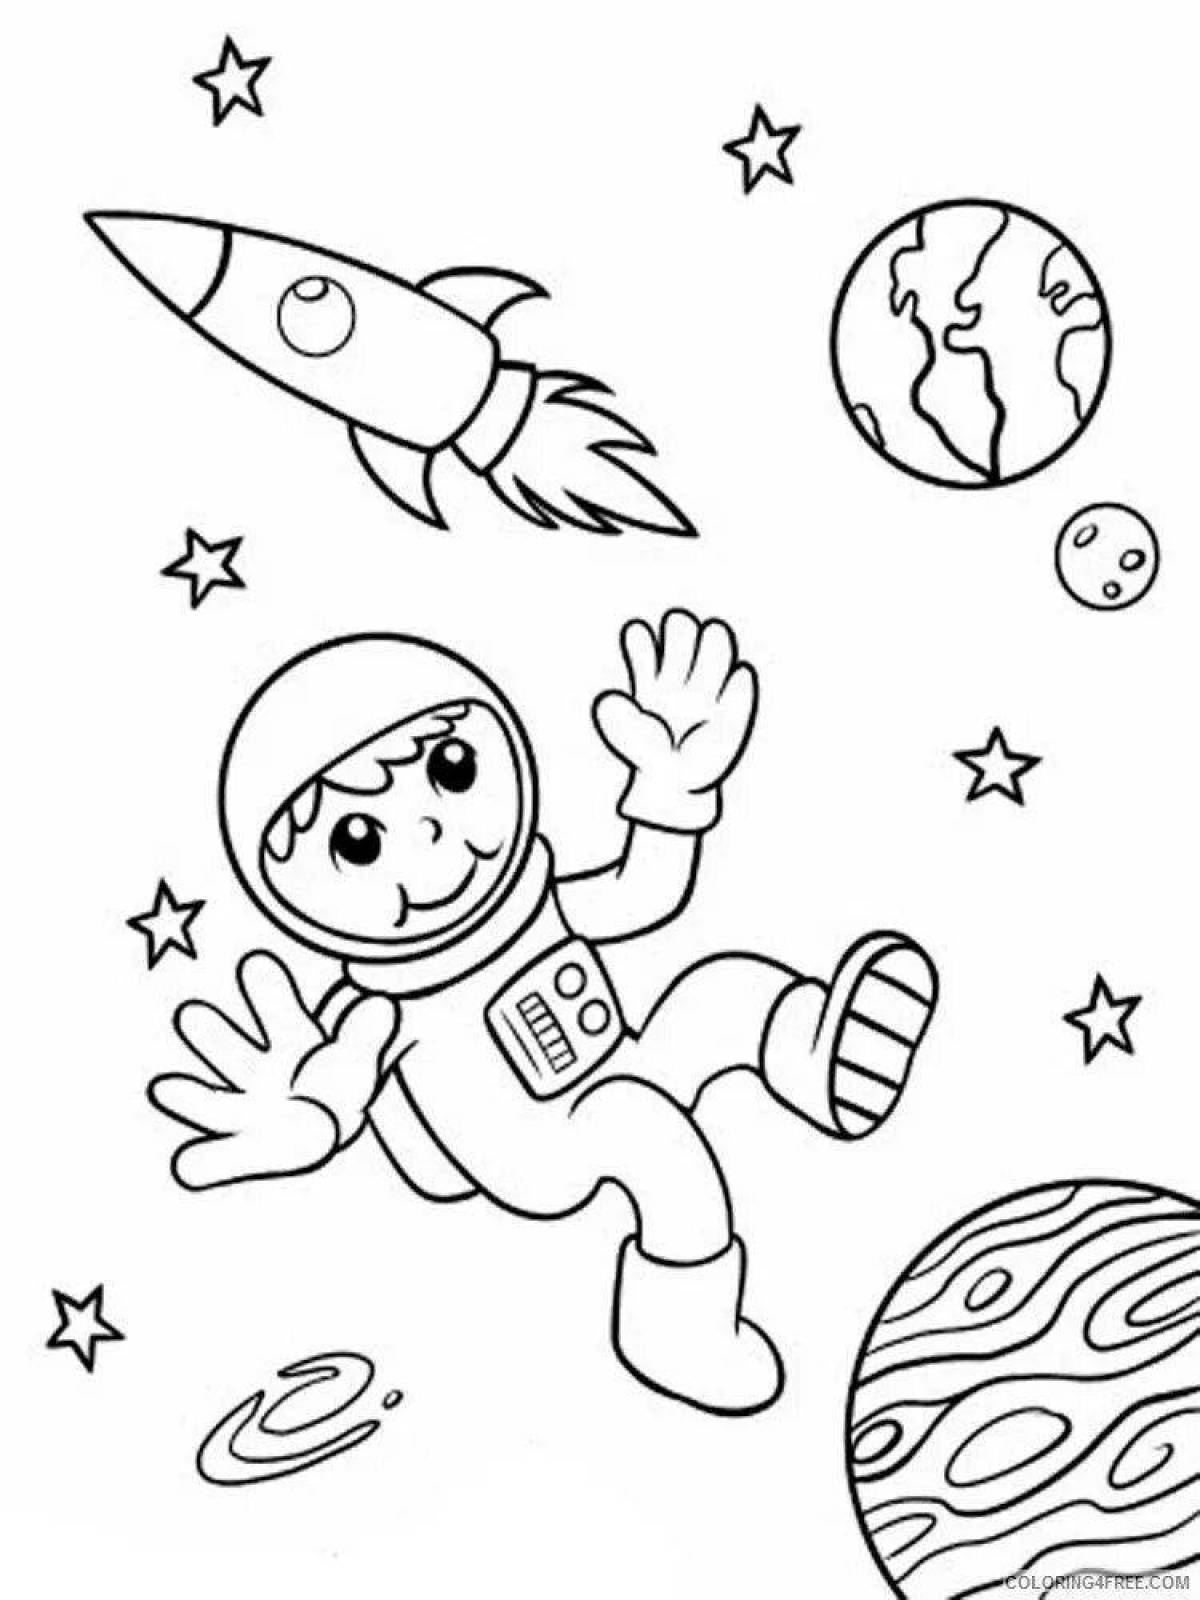 Раскраска космос для детей 4 5. Космос раскраска для детей. Космонавт раскраска для детей. Космонавт для раскрашивания для детей. Раскраска. В космосе.